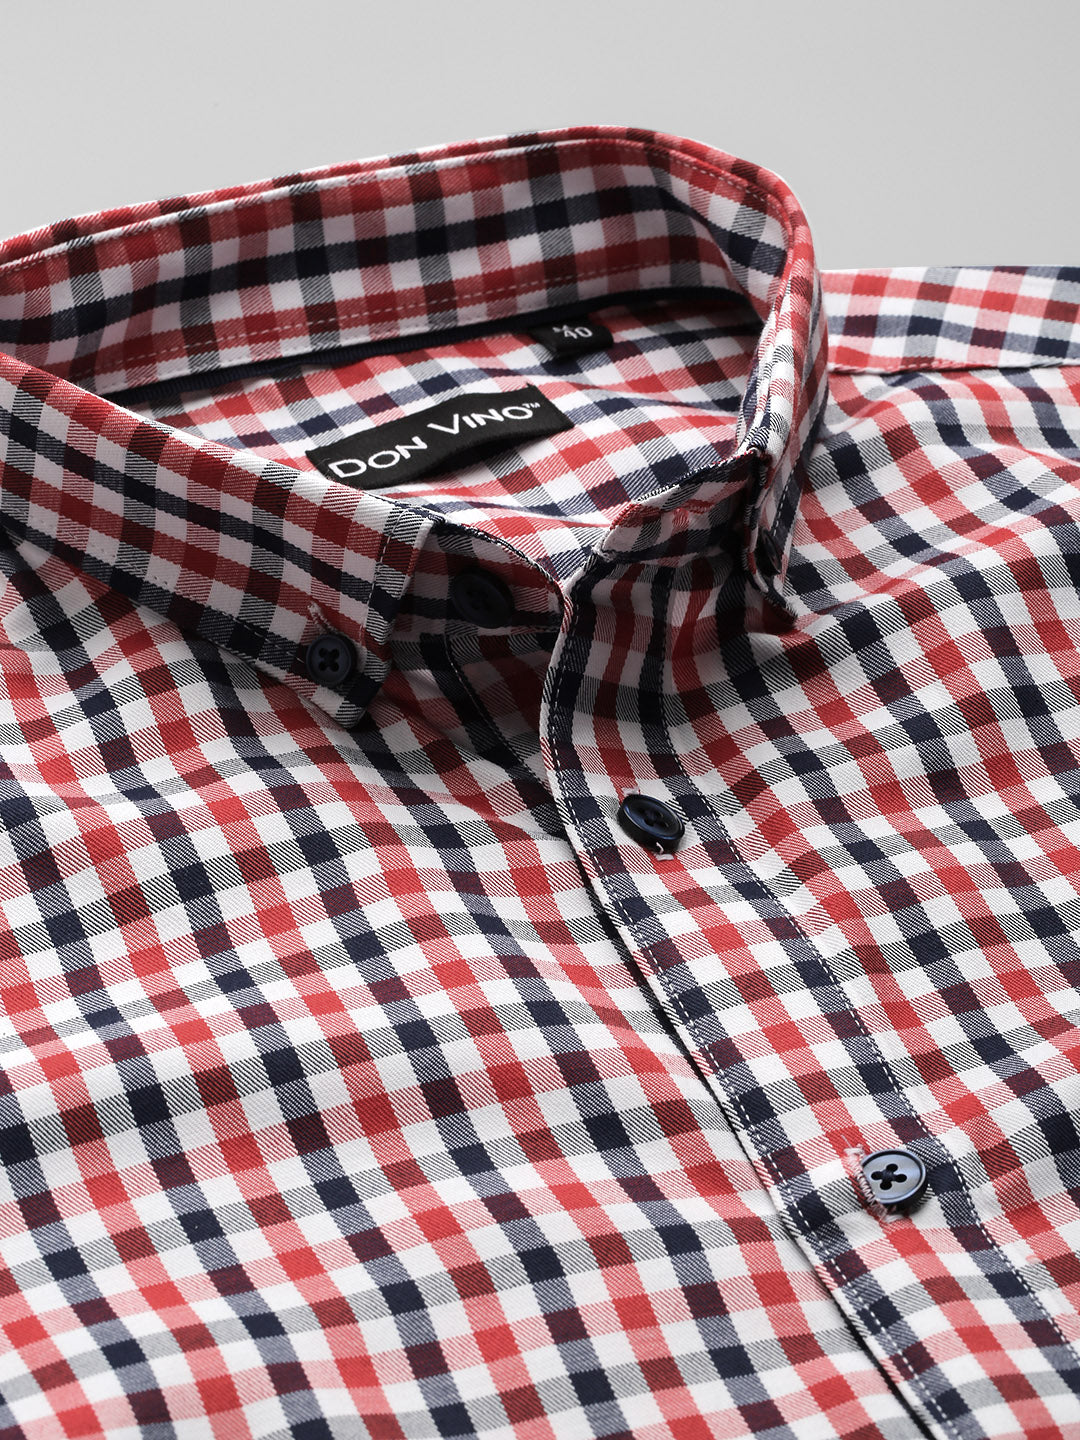 Don Vino Men's Red & White Checks Slim Fit Shirt